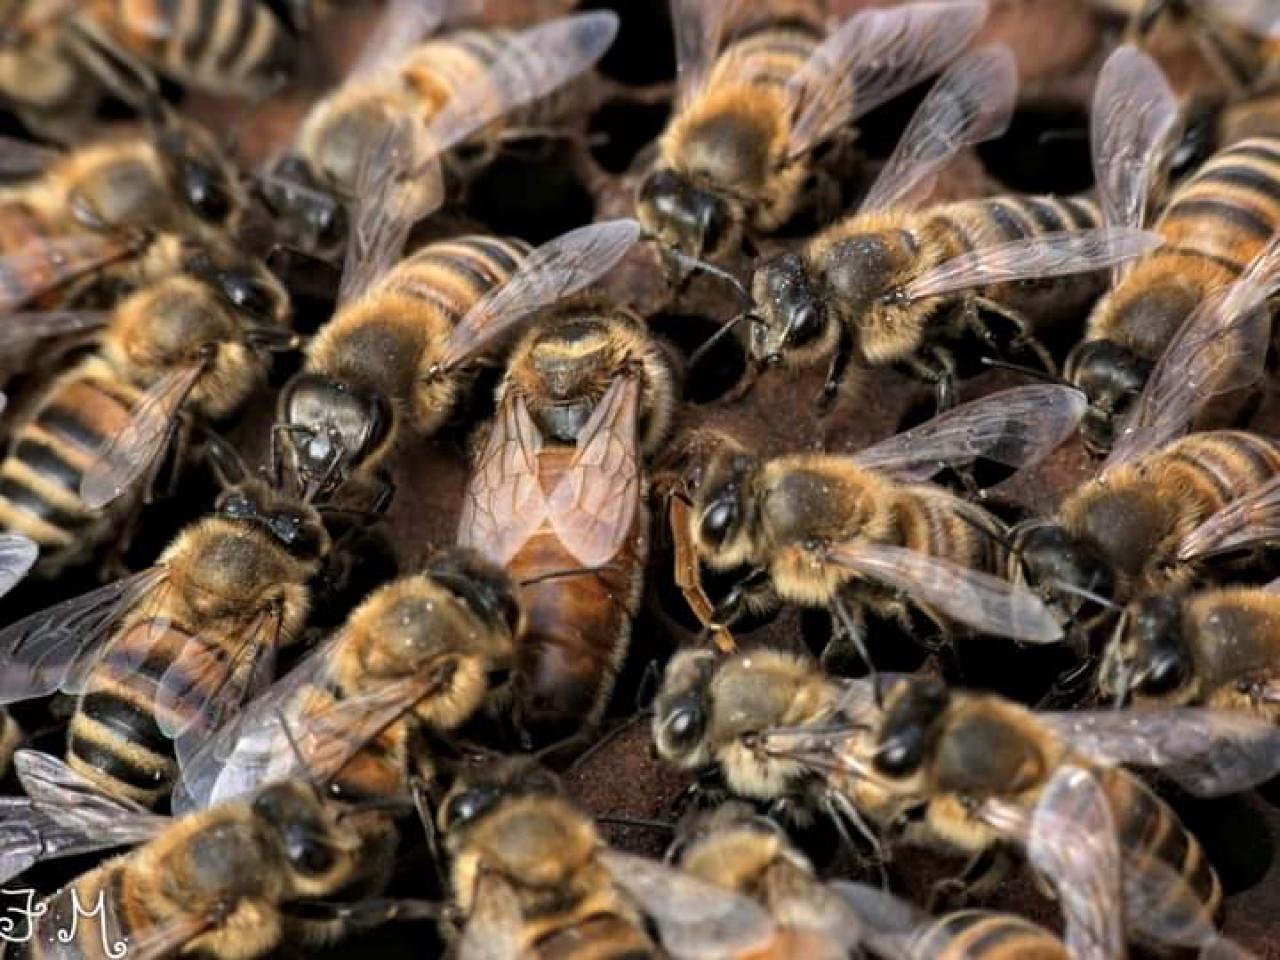 20 maggio, la giornata mondiale delle api (Fonte immagine: Rete Meteo Amatori)